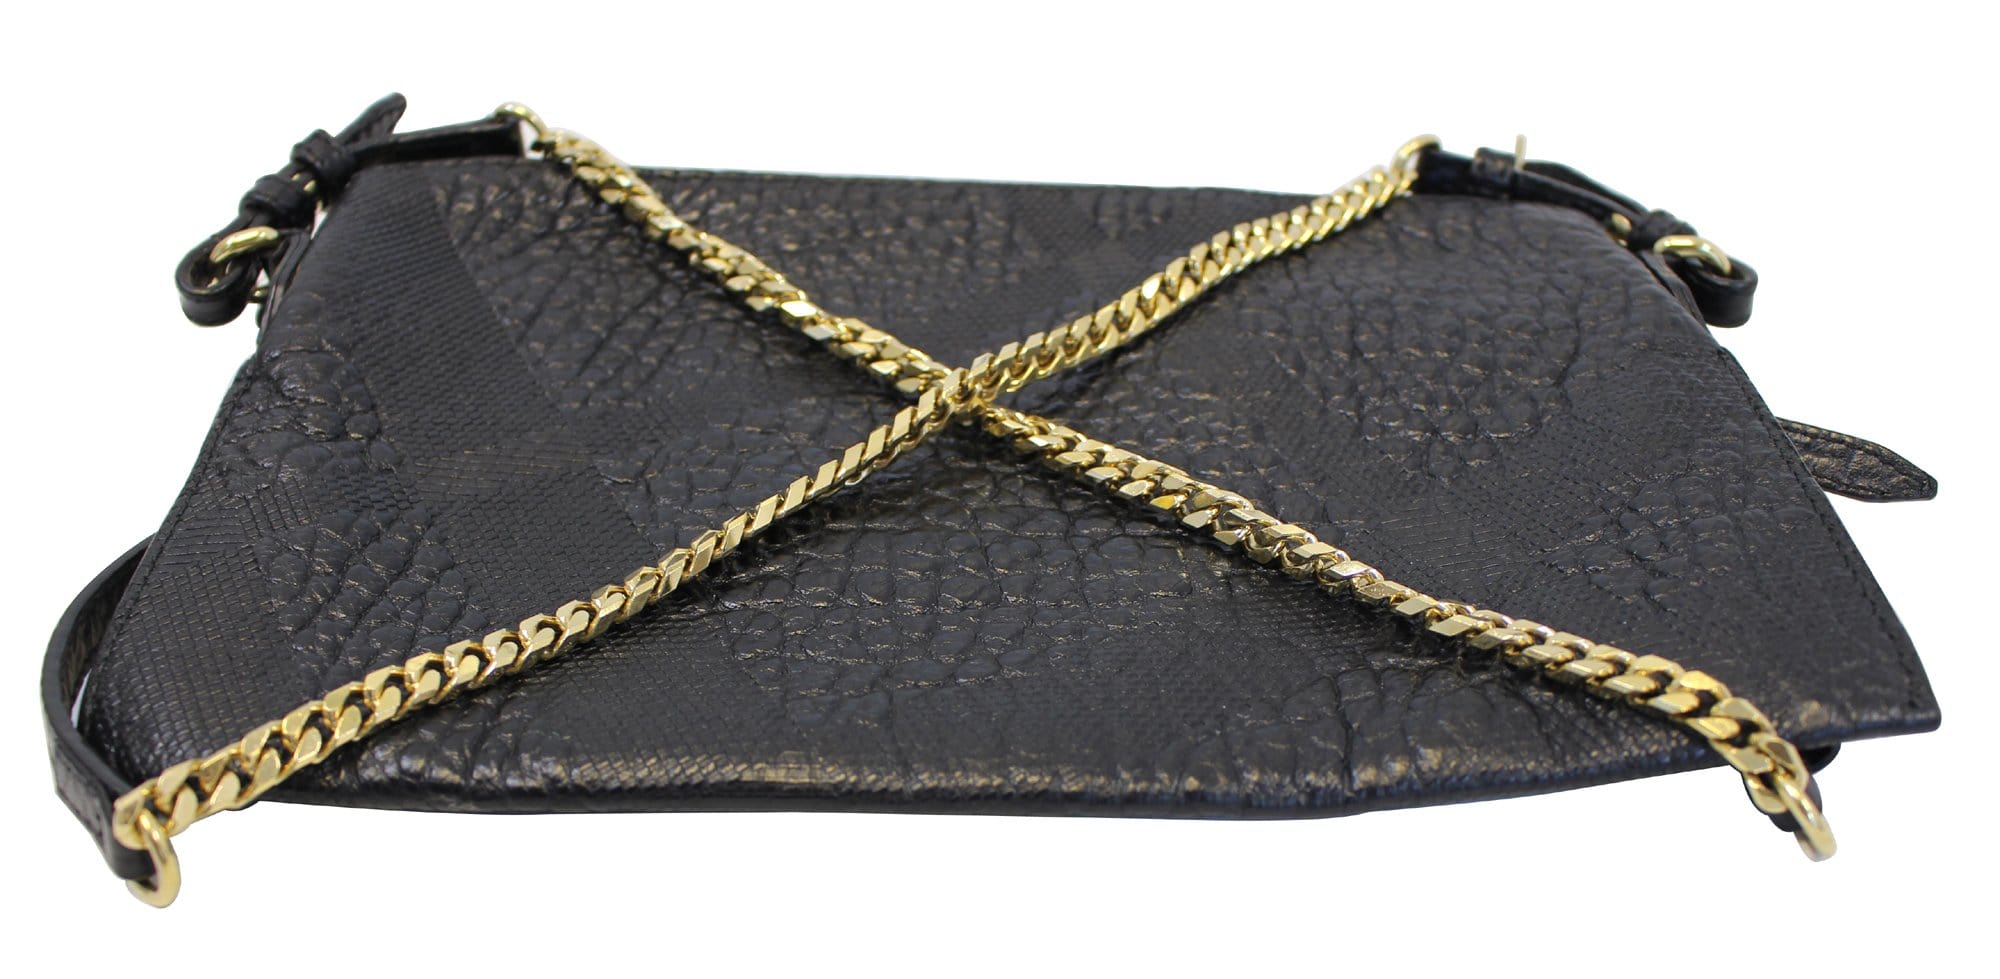 Burberry Clutch Handbag - Authentic Pre-Owned Designer Handbags